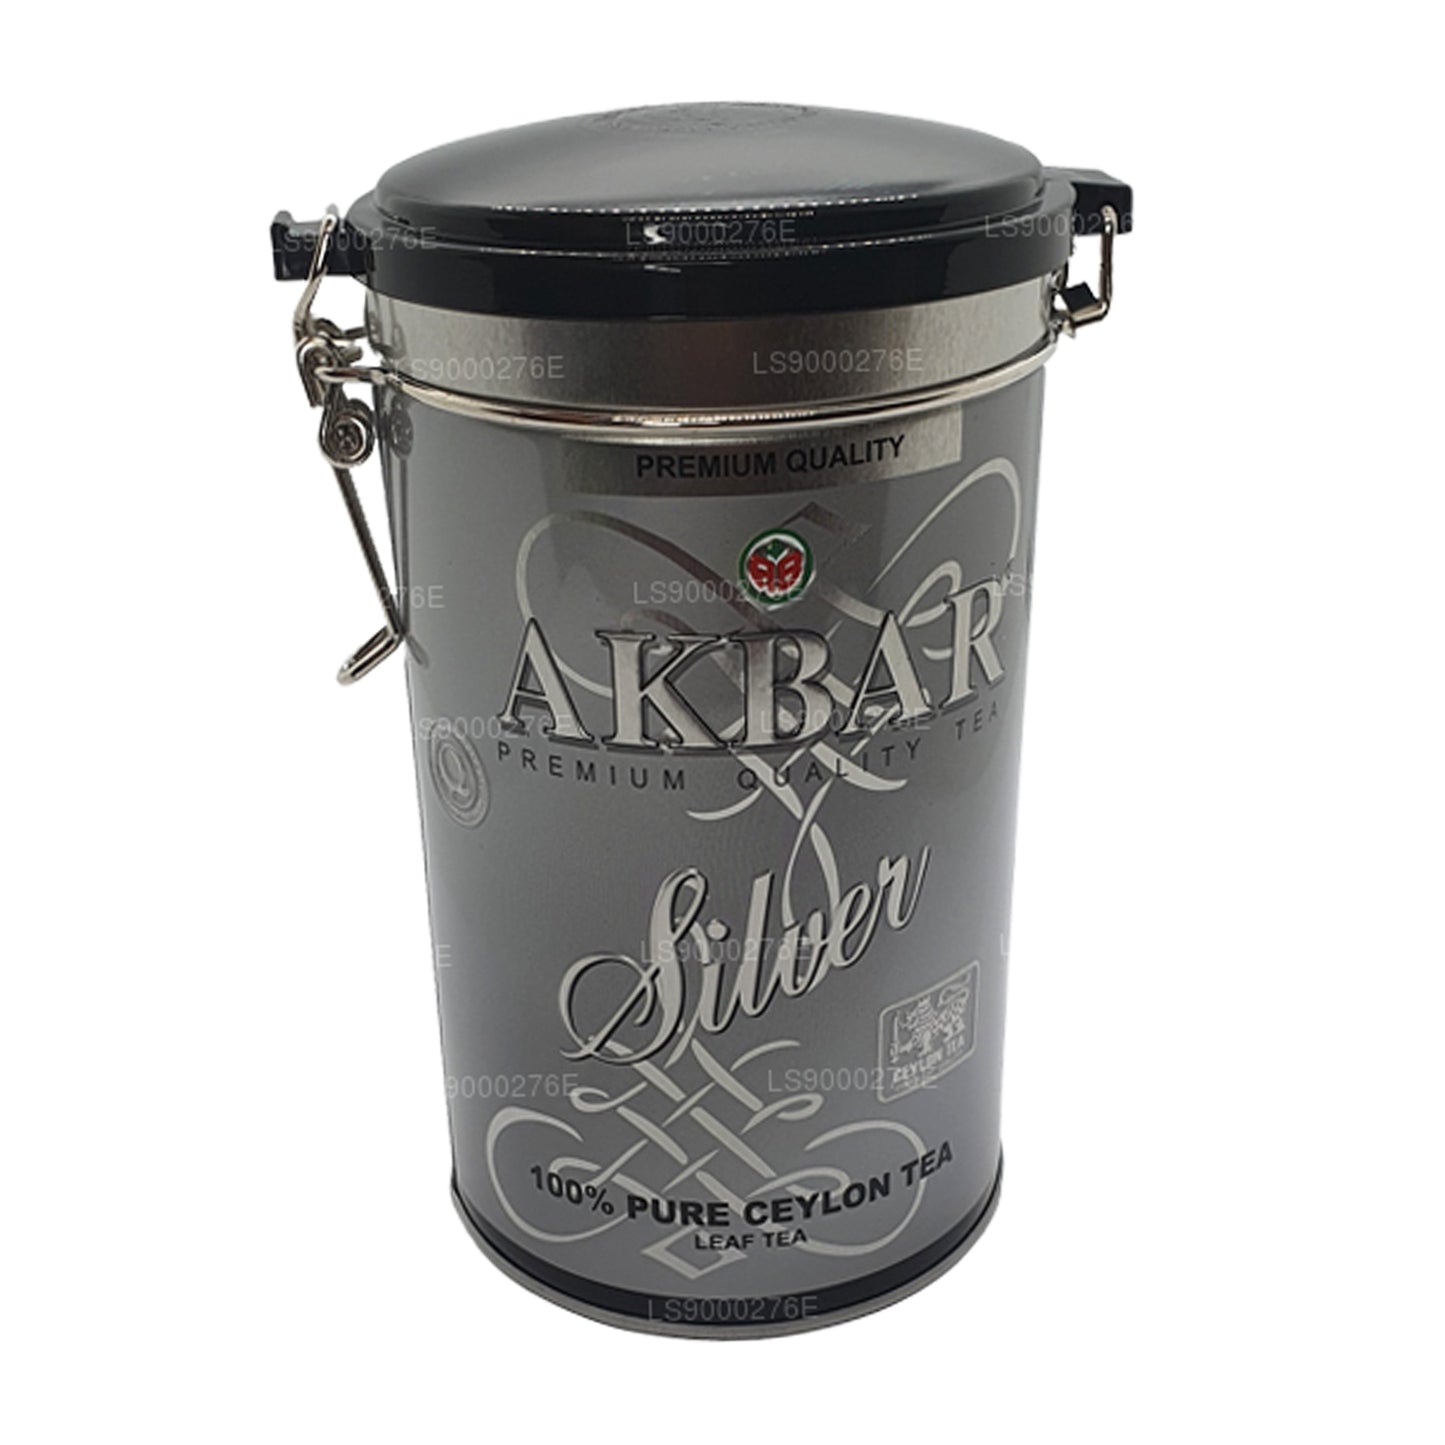 Akbar Silver Leaf-thee (150 g)